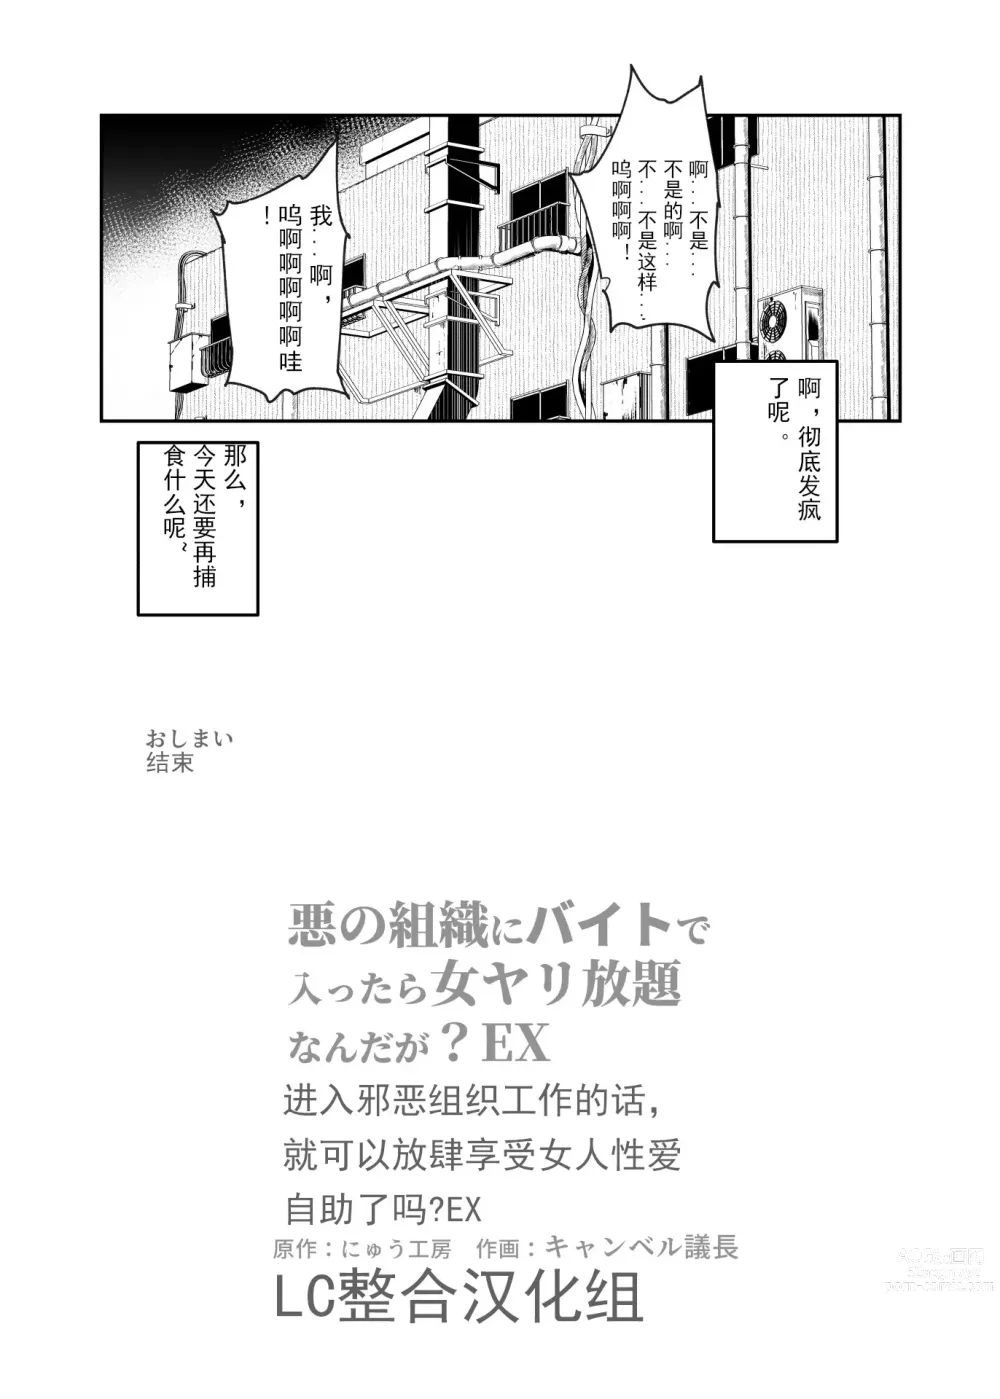 Page 27 of doujinshi 进入邪恶组织工作的话，就可以放肆享受女人性爱自助了吗?EX